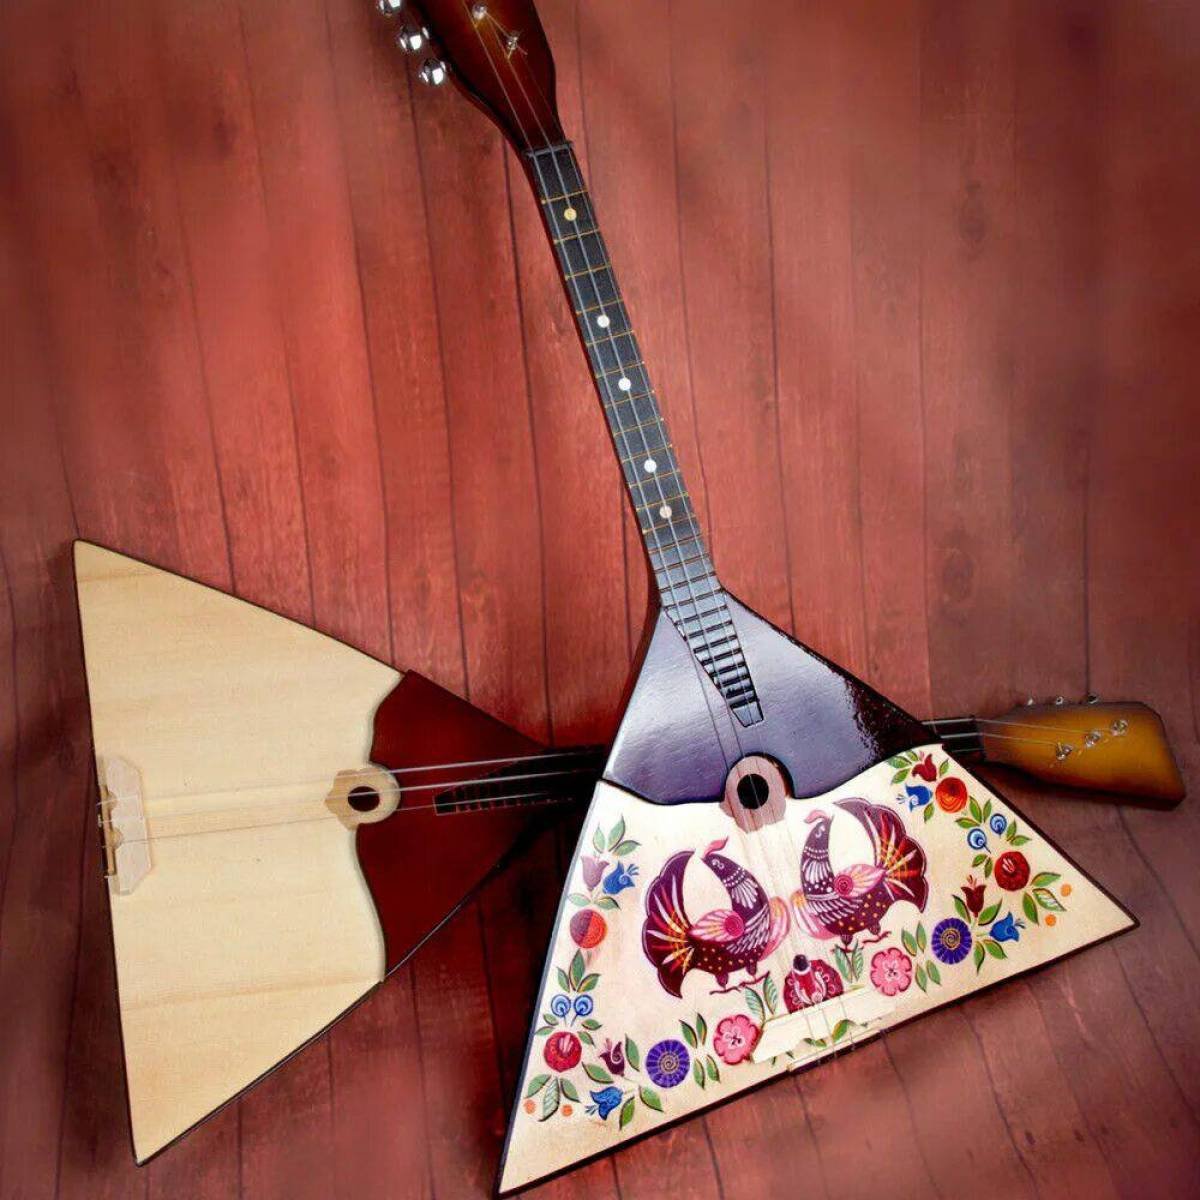 Балалайка музыкальный инструмент русский народный инструмент